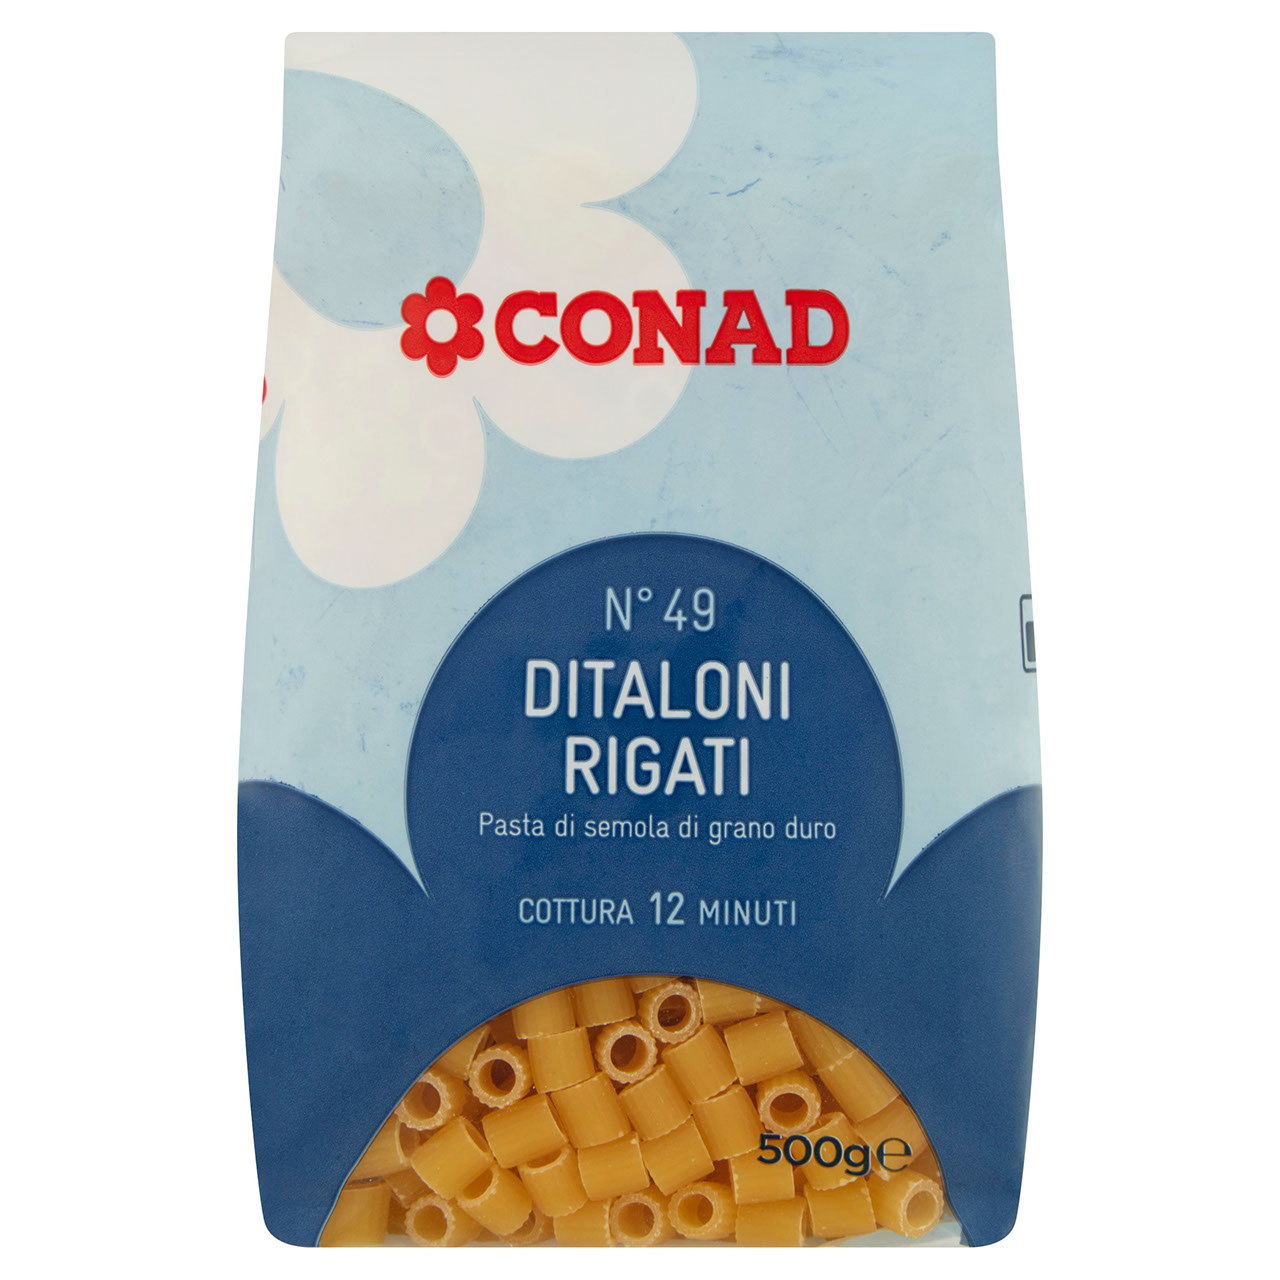 Ditaloni Rigati 500 g Conad in vendita online